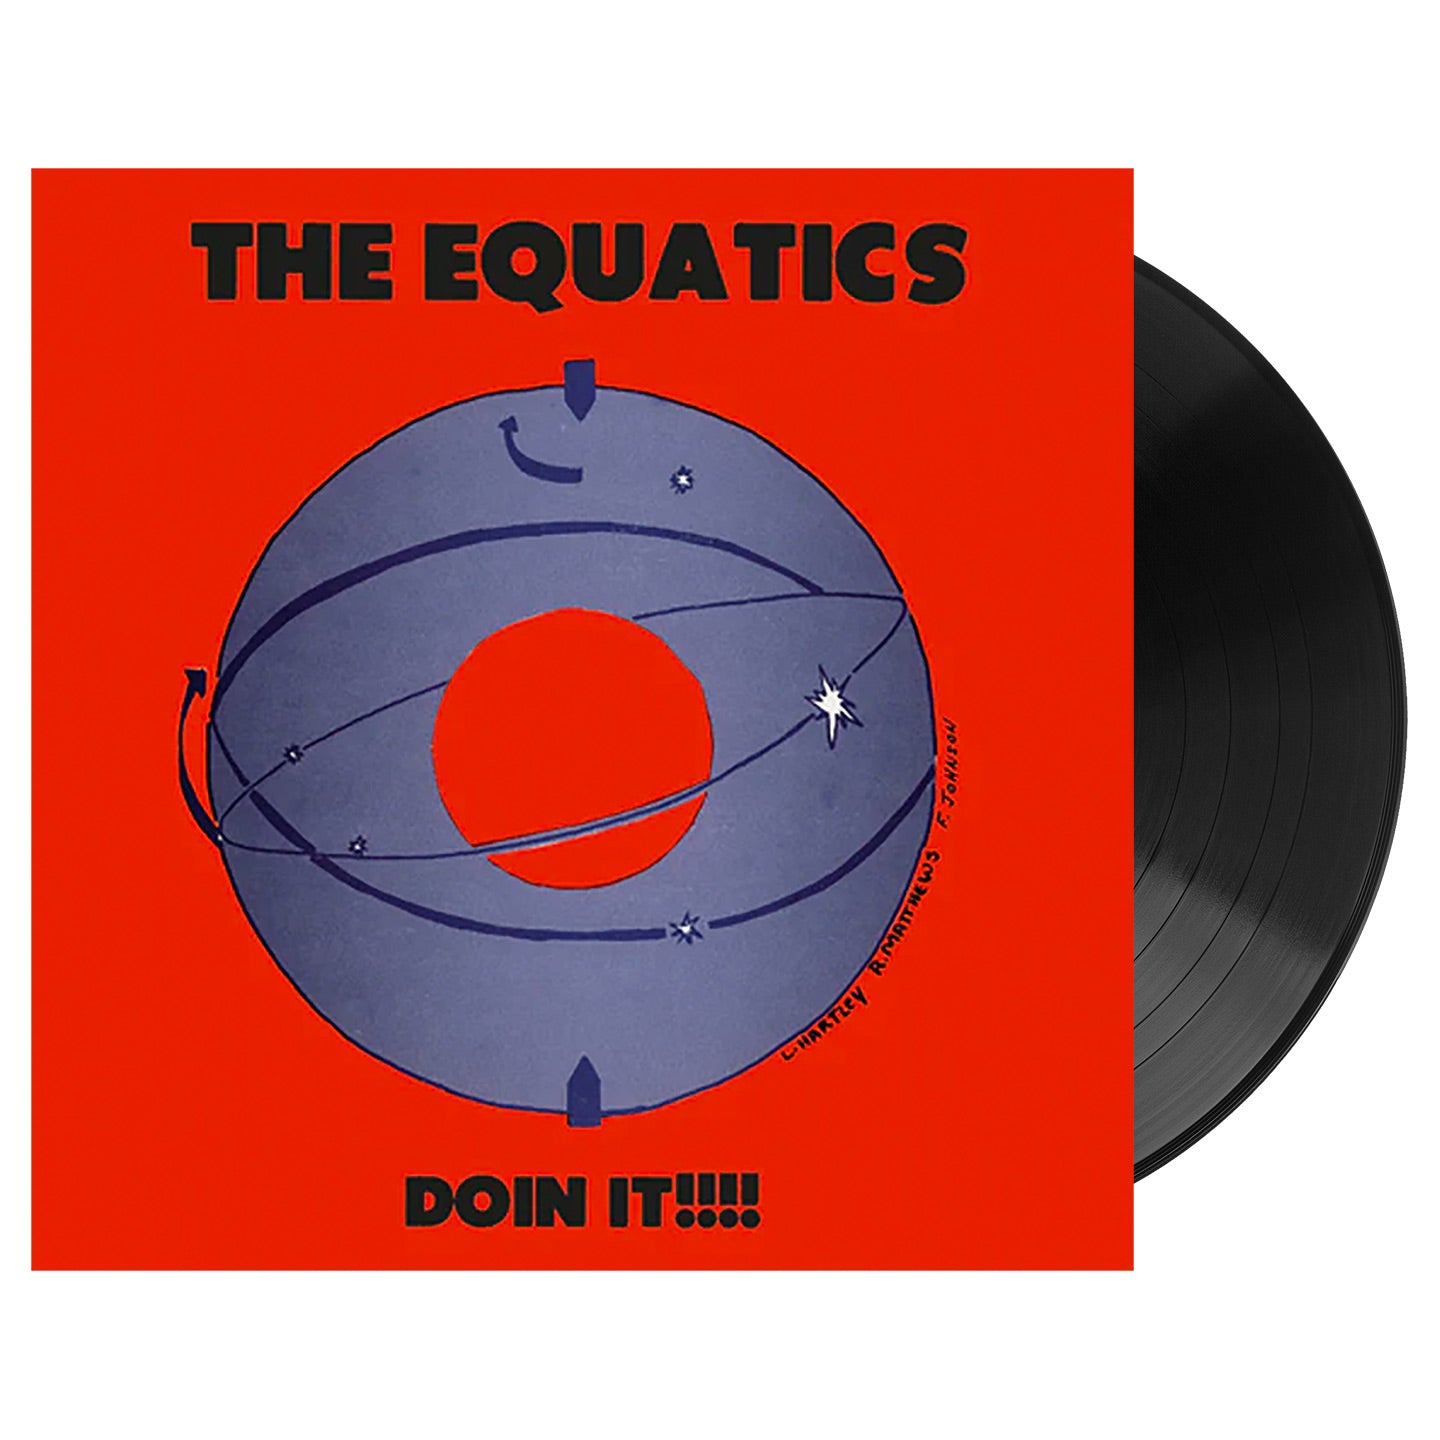 The Equatics - Doin It!!!!